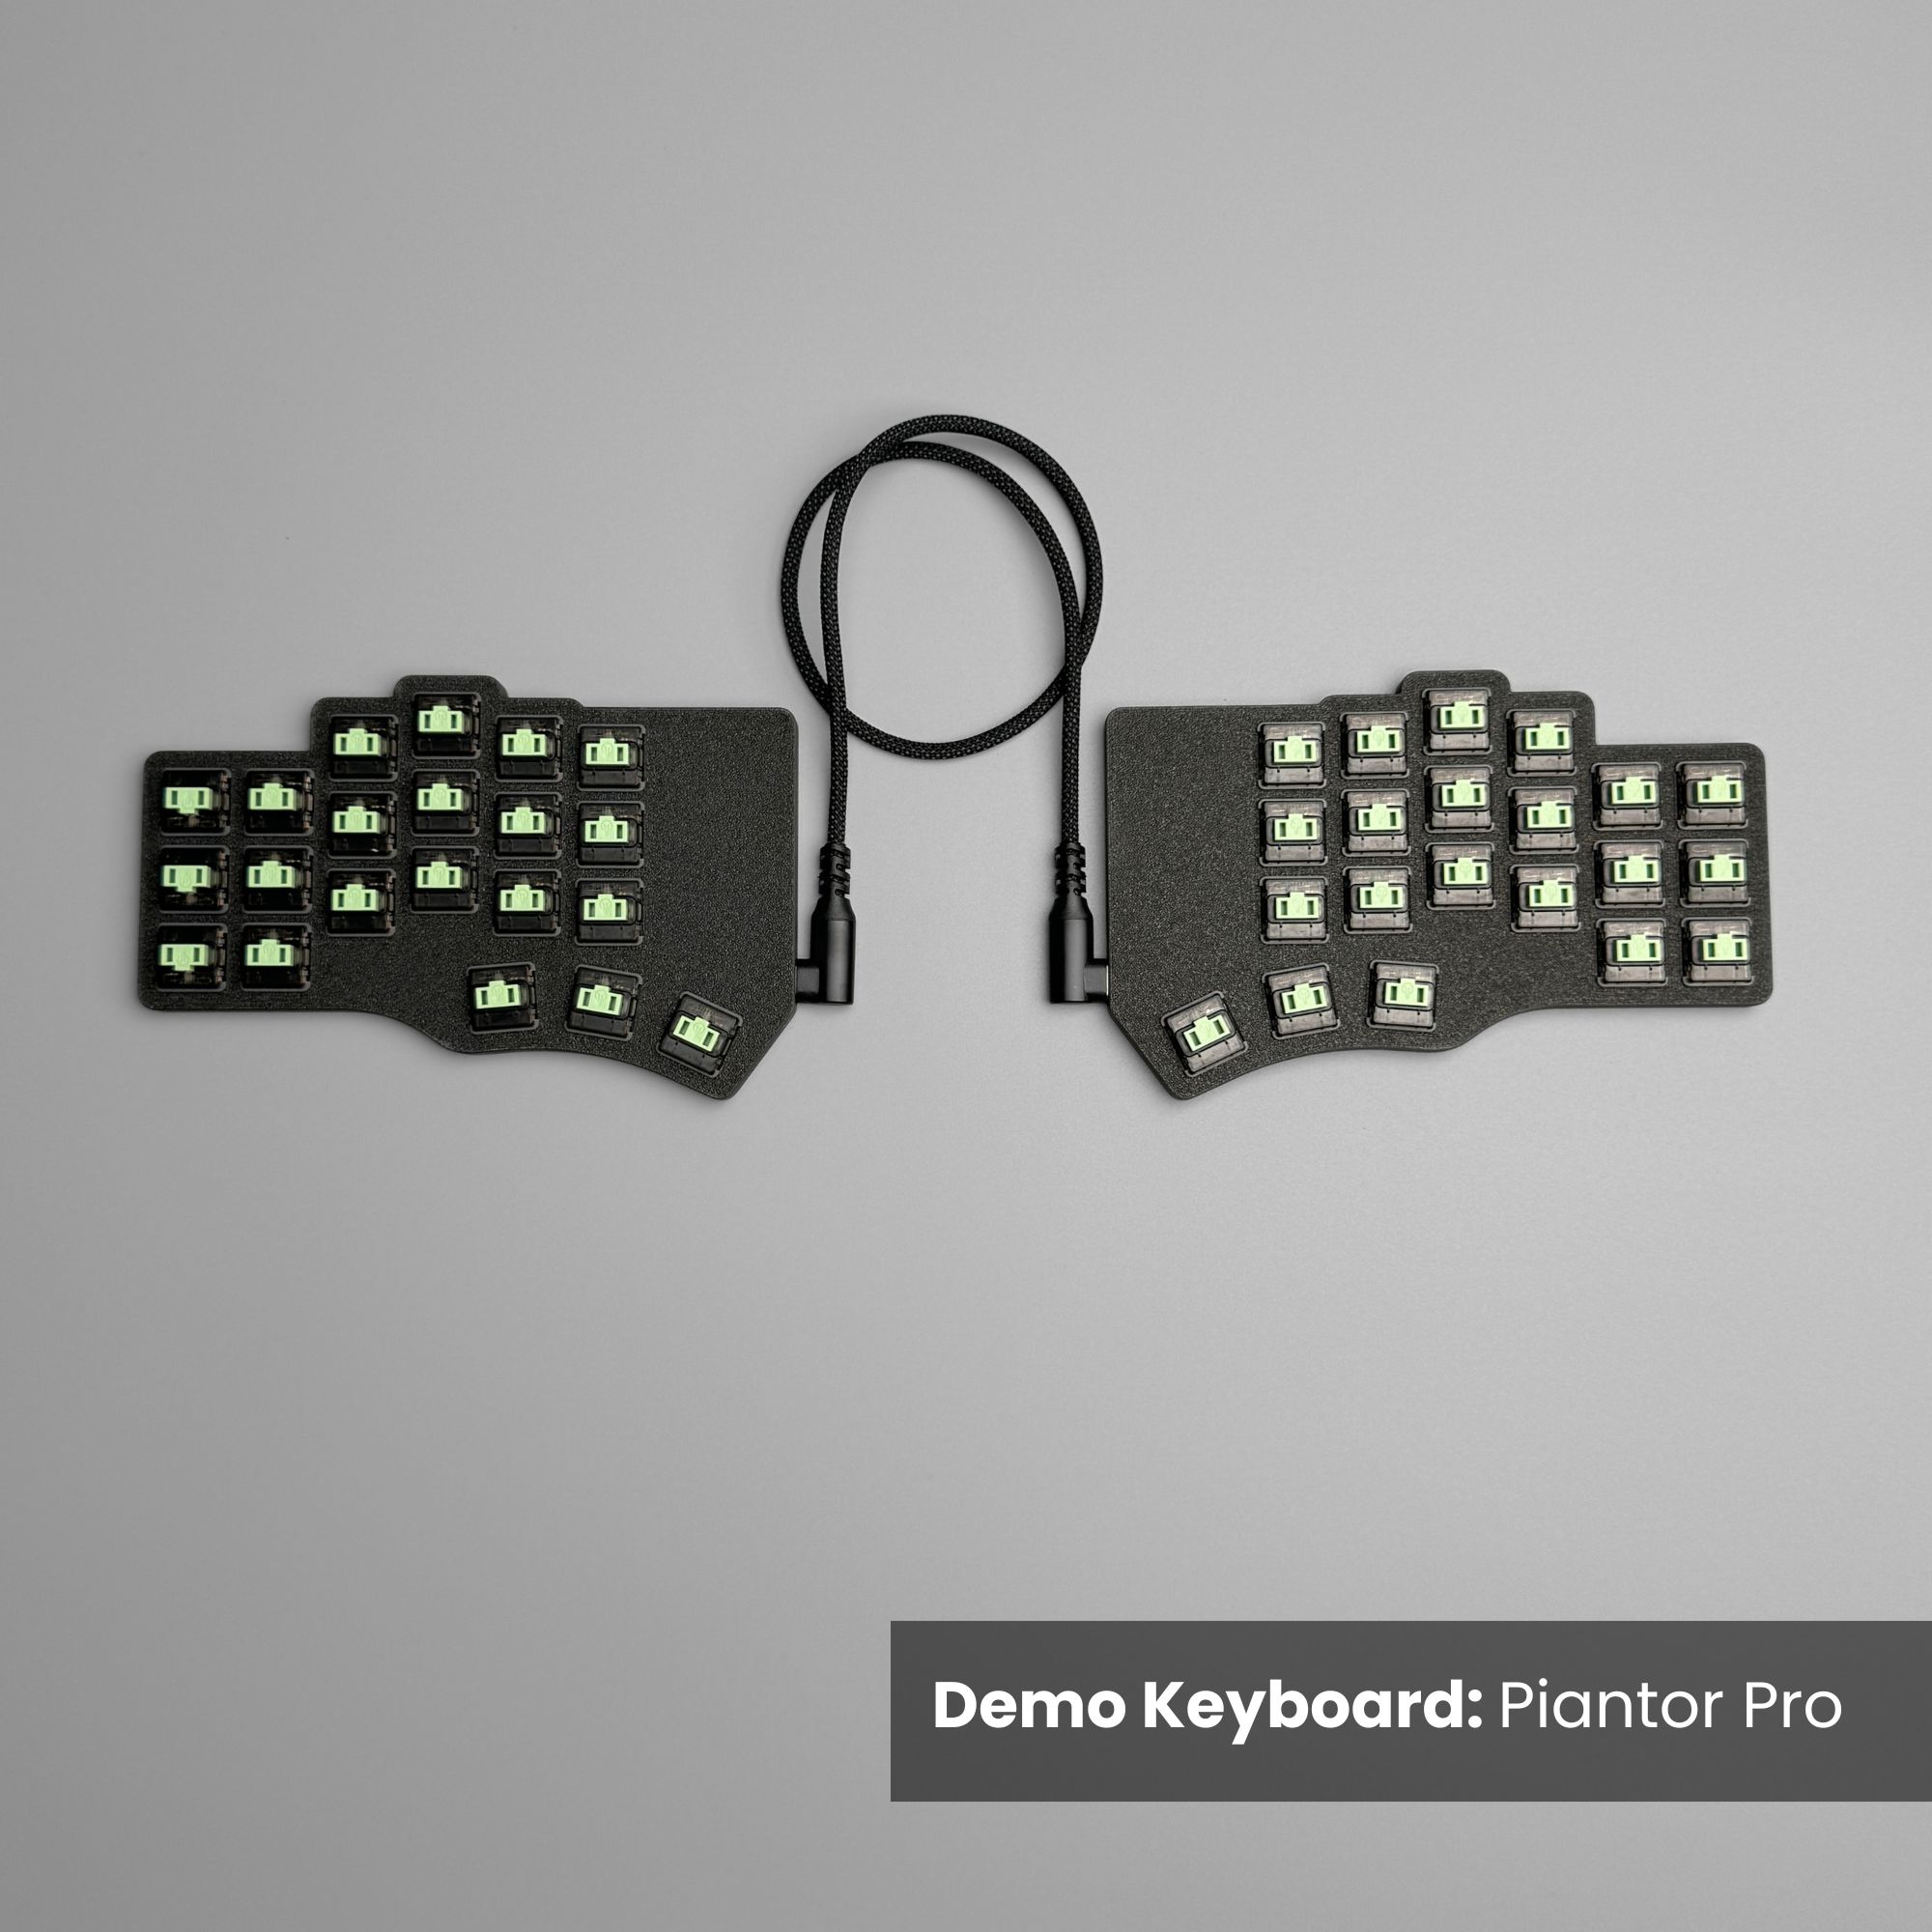 Silent Choc key switch twilight by lowprokb on piantor pro split keyboard